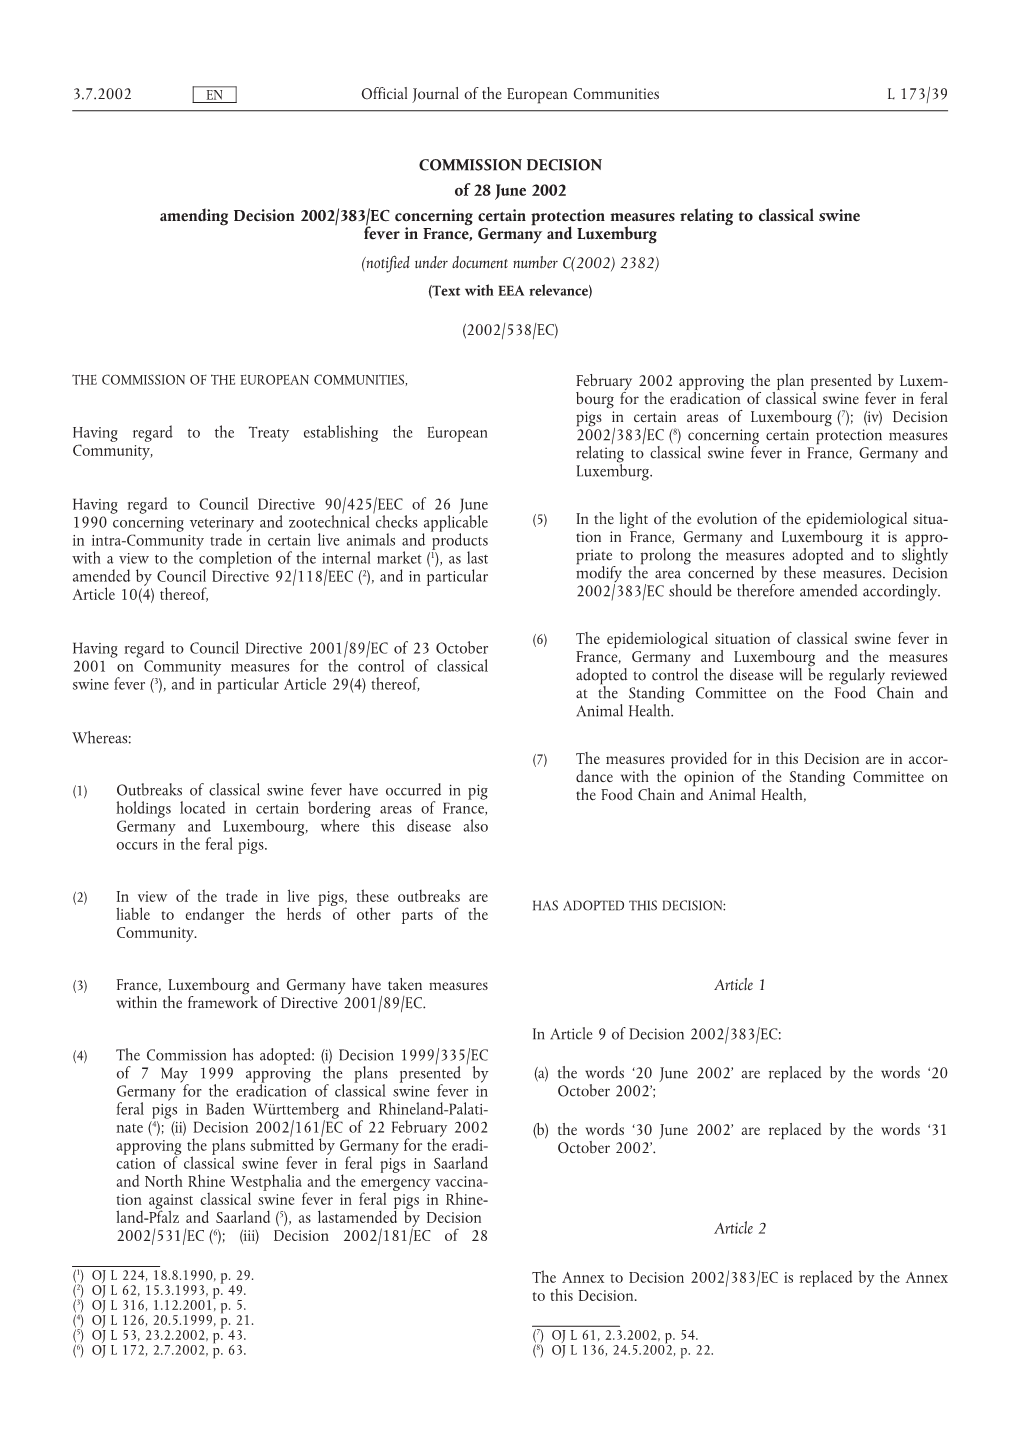 COMMISSION DECISION of 28 June 2002 Amending Decision 2002/383